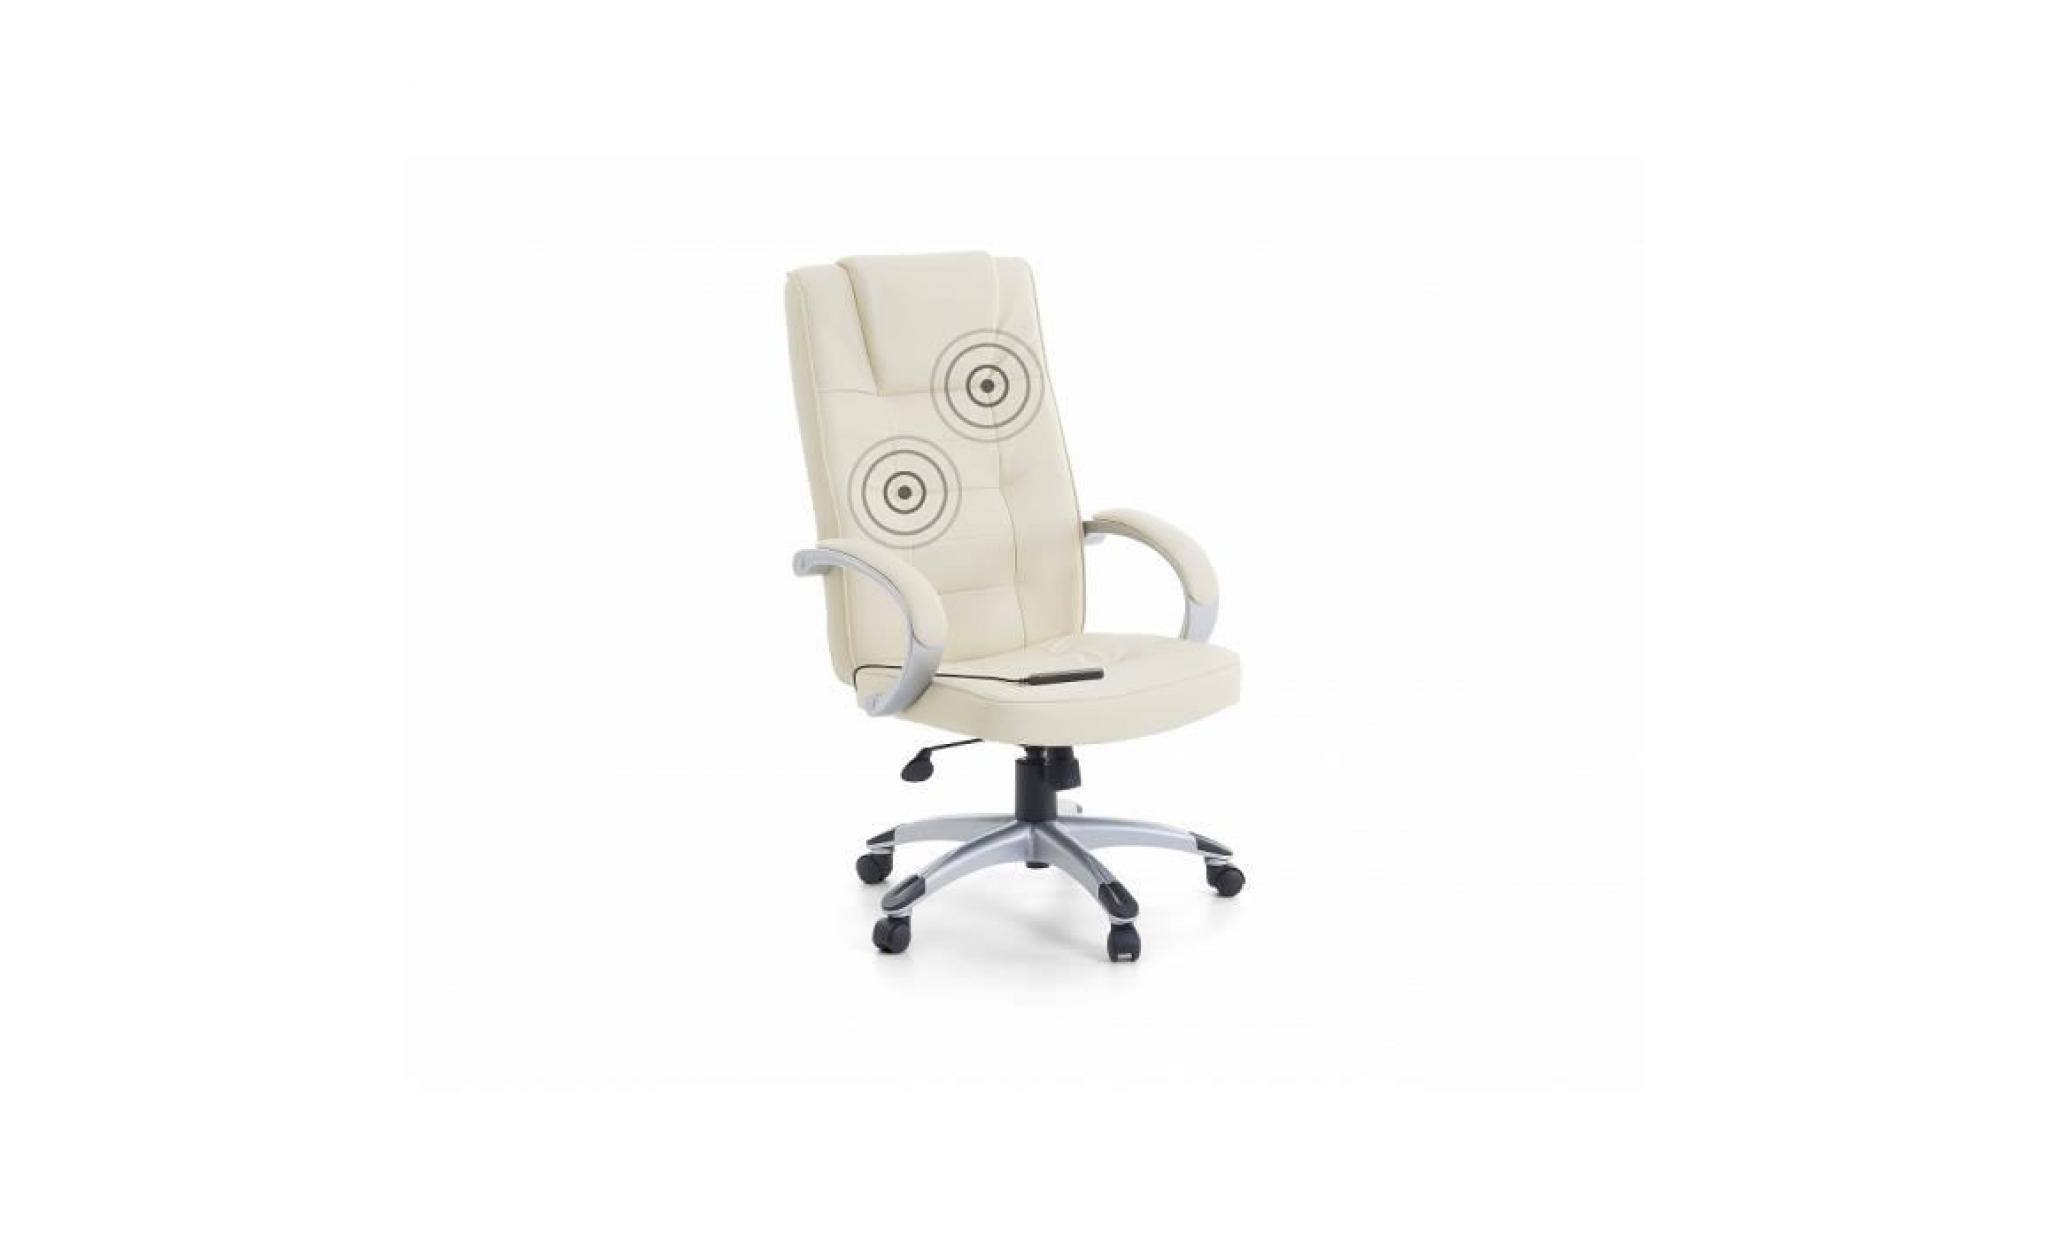 fauteuil massant   chaise de bureau   pu beige et pied chrome   diamond ii